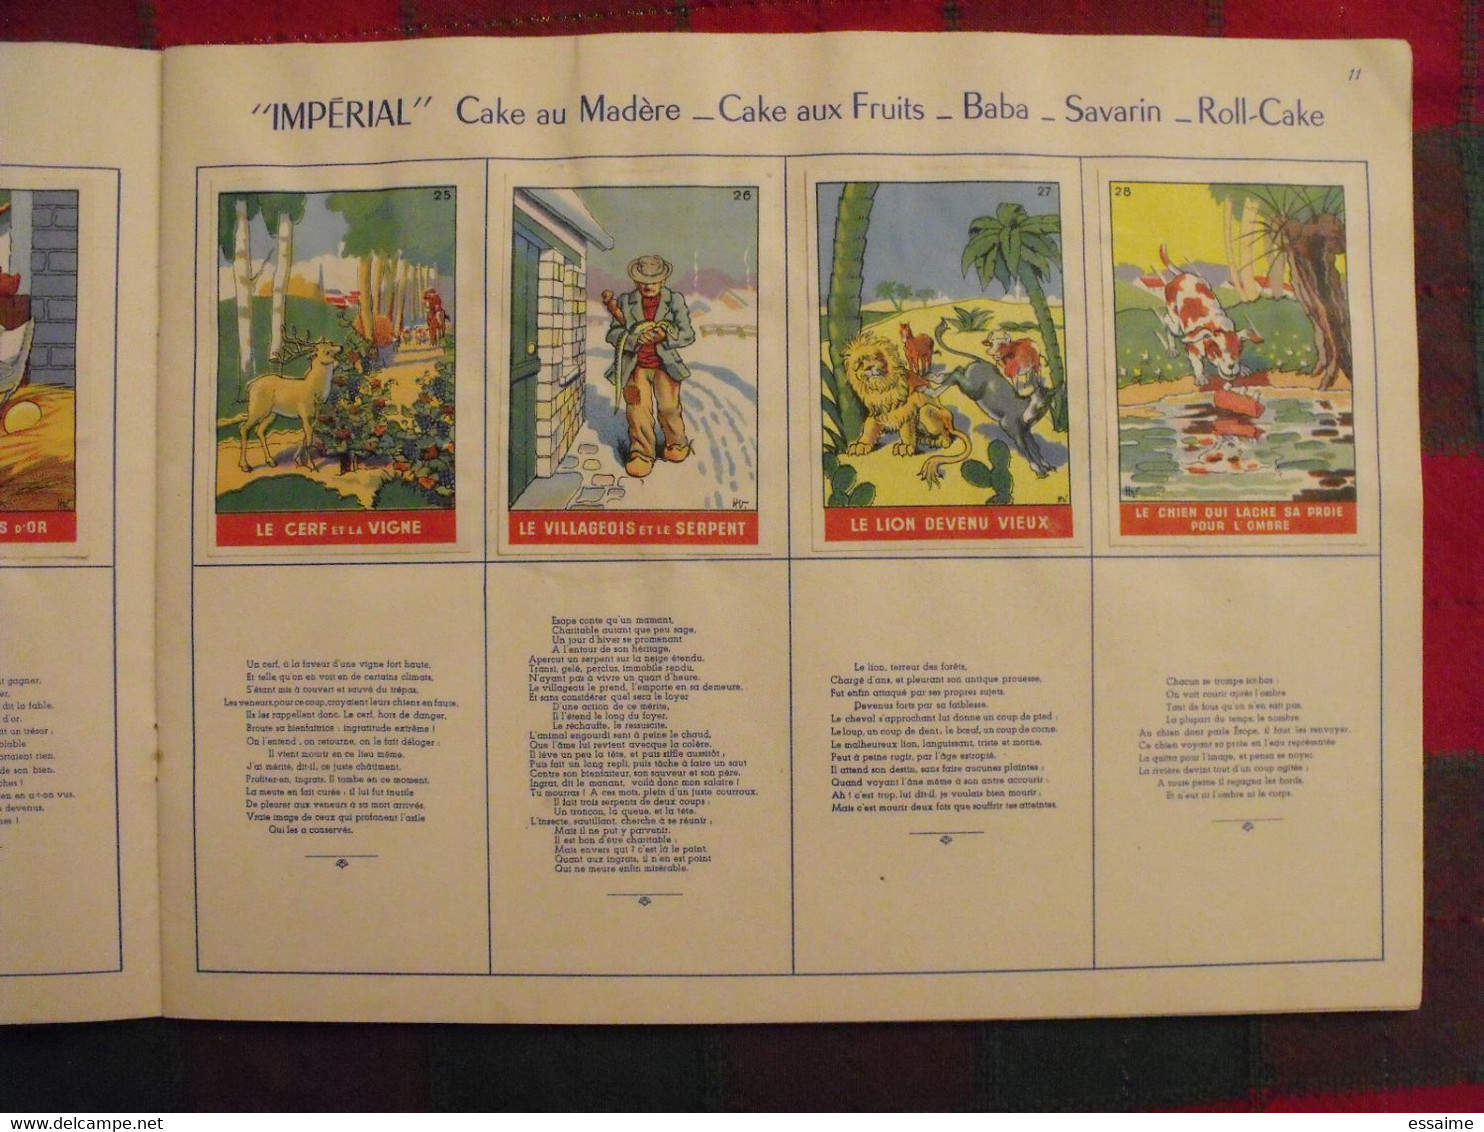 album d'images Fables de La Fontaine. flan entremets Impérial. contient 32/96 images. vers 1960. lot 2